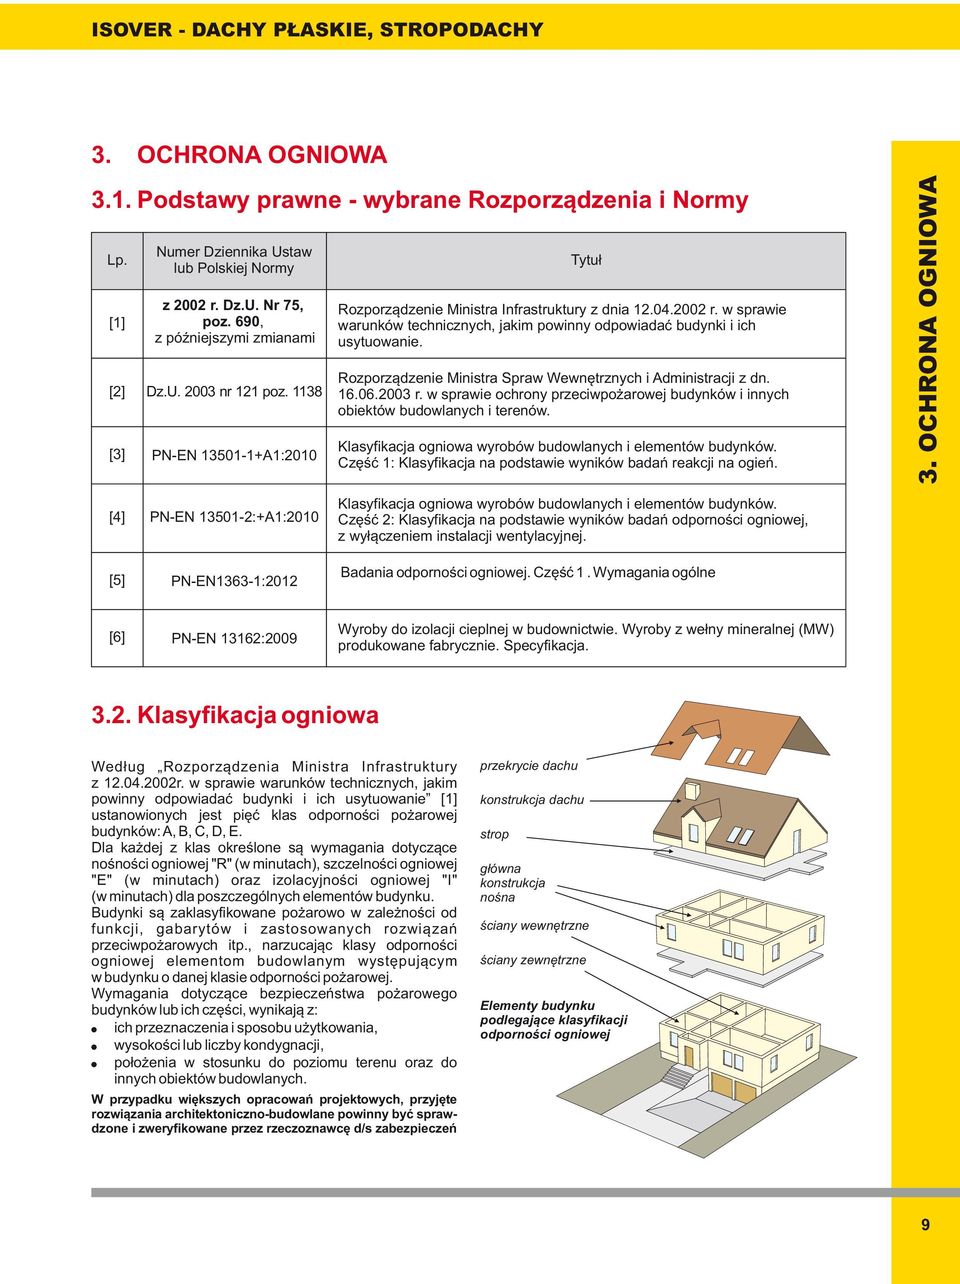 Rozporządzenie Ministra Spraw Wewnętrznych i Administracji z dn. 16.06.003 r. w sprawie ochrony przeciwpożarowej budynków i innych obiektów budowlanych i terenów.